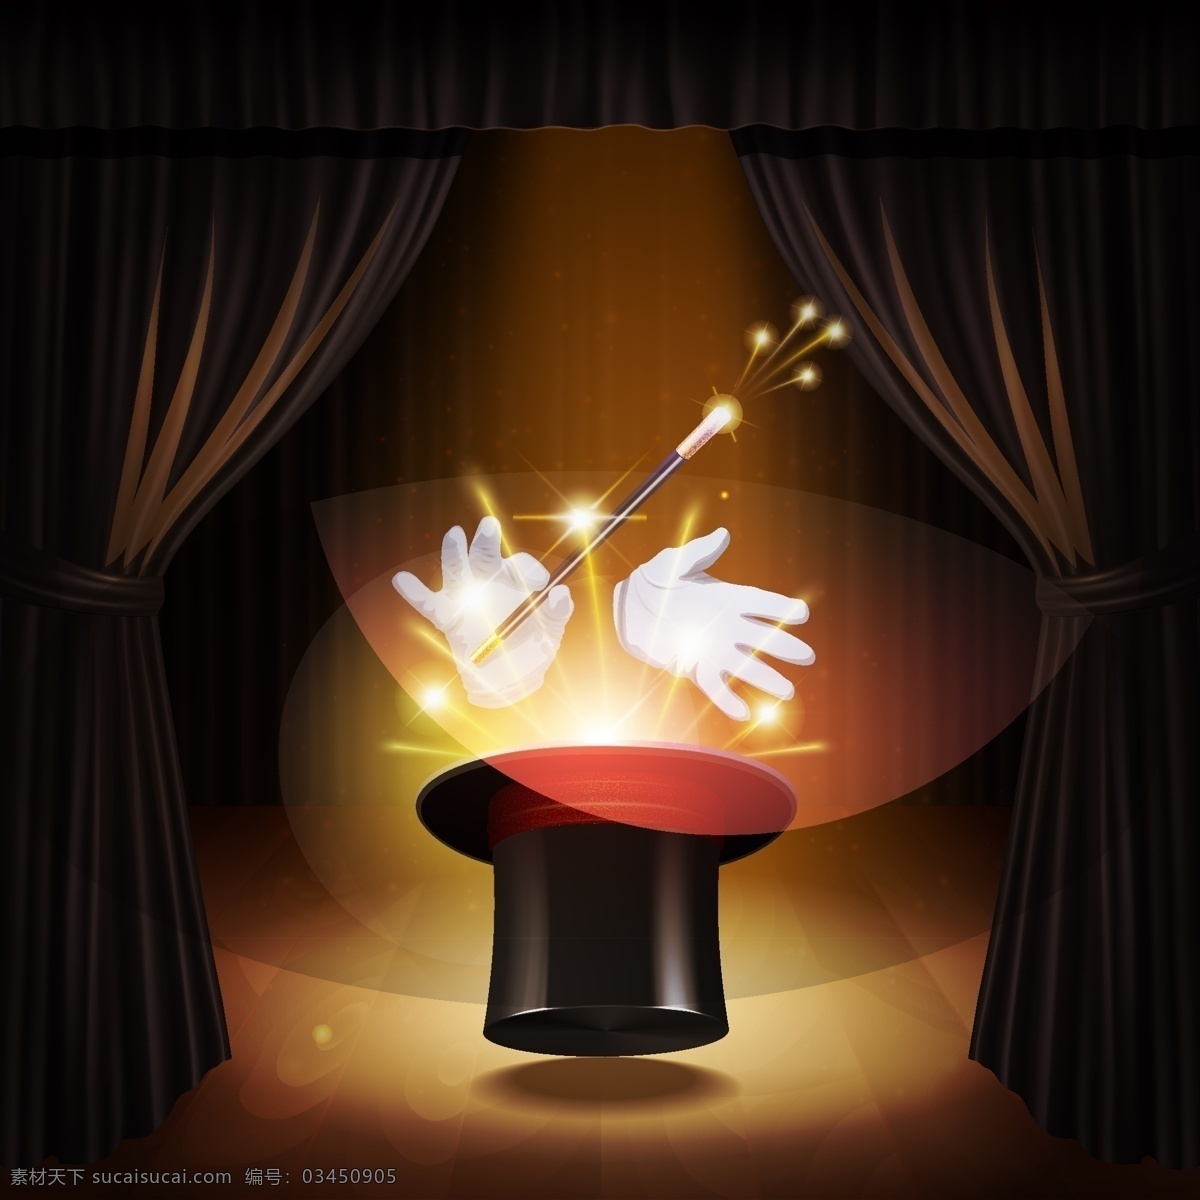 魔术舞台 魔术表演 魔术幕布 魔术海报 魔术元素 魔术素材 魔术展板 魔术道具 魔术工具 魔术帽 魔术 变戏法 魔术手 橙色背景 城市渐变背景 光感光线光效 光束 手 生活百科 休闲娱乐